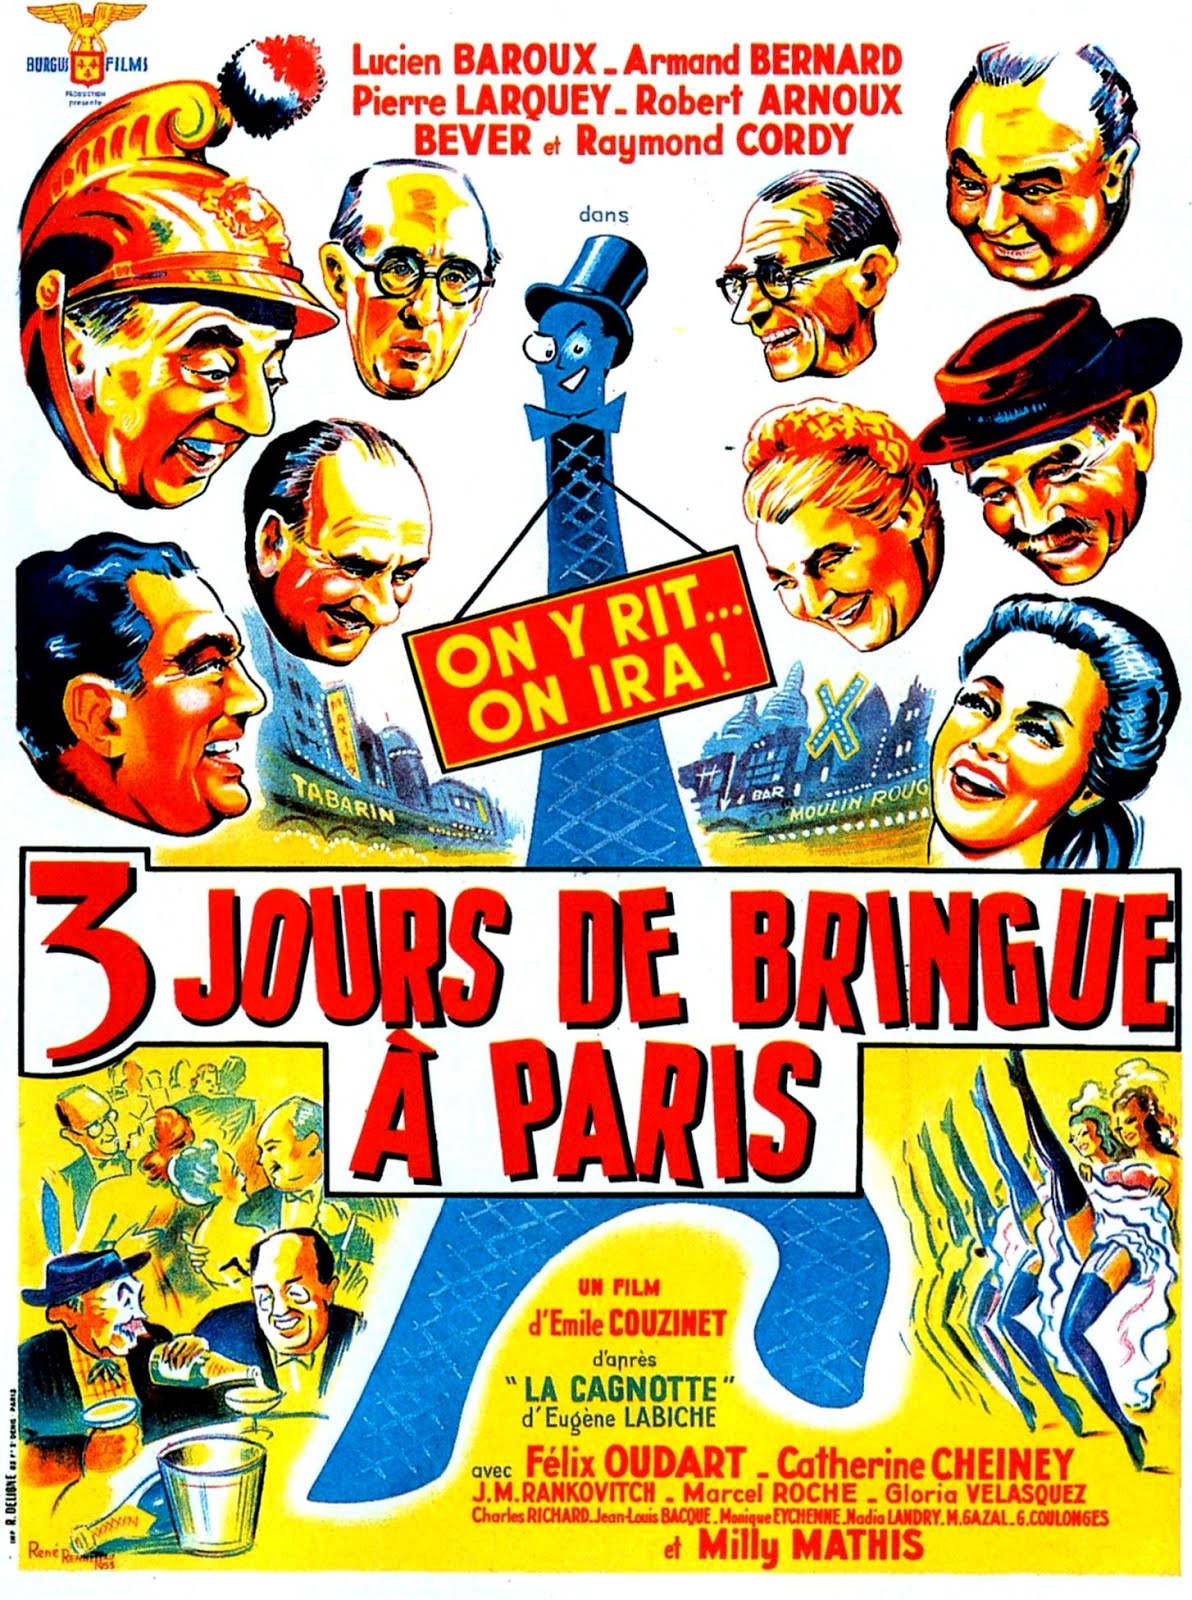 3 jours de bringue à Paris (1953) Emile Couzinet - 3 jours de bringue à Paris